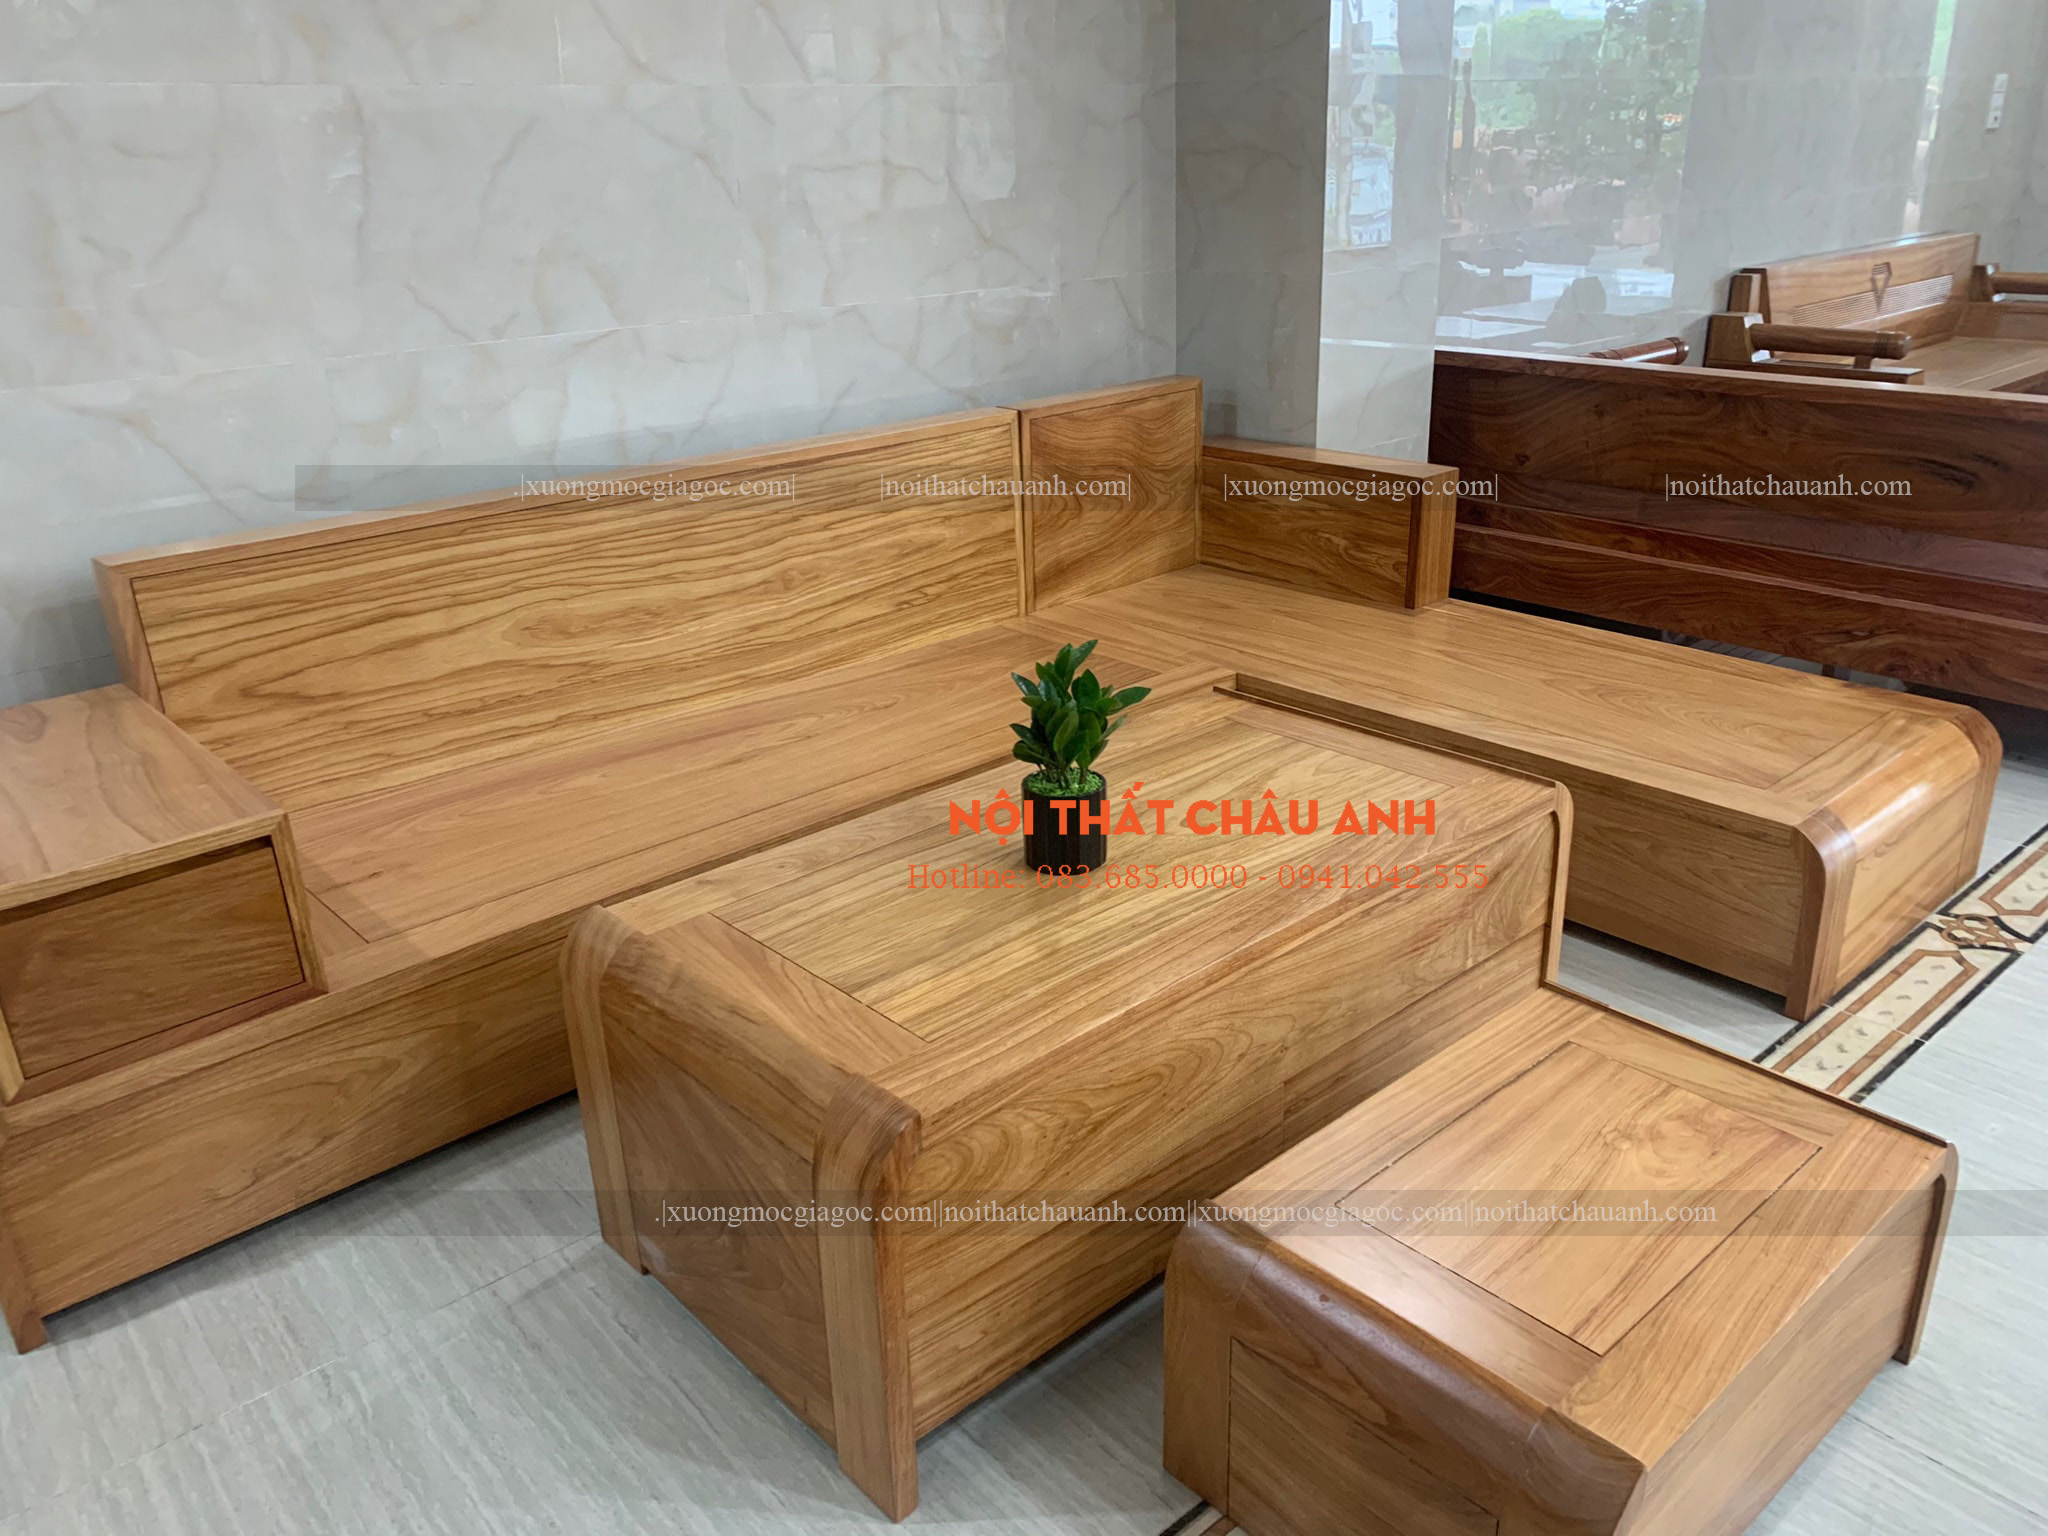 Bàn ghế phòng khách gỗ hương xám là lựa chọn hoàn hảo cho không gian phòng khách hiện đại và sang trọng. Với màu sắc trang nhã, chất liệu gỗ hương xám cao cấp và những đường nét thiết kế tinh tế, bộ bàn ghế phòng khách gỗ hương xám sẽ mang lại sự sang trọng và ấn tượng cho ngôi nhà của bạn.